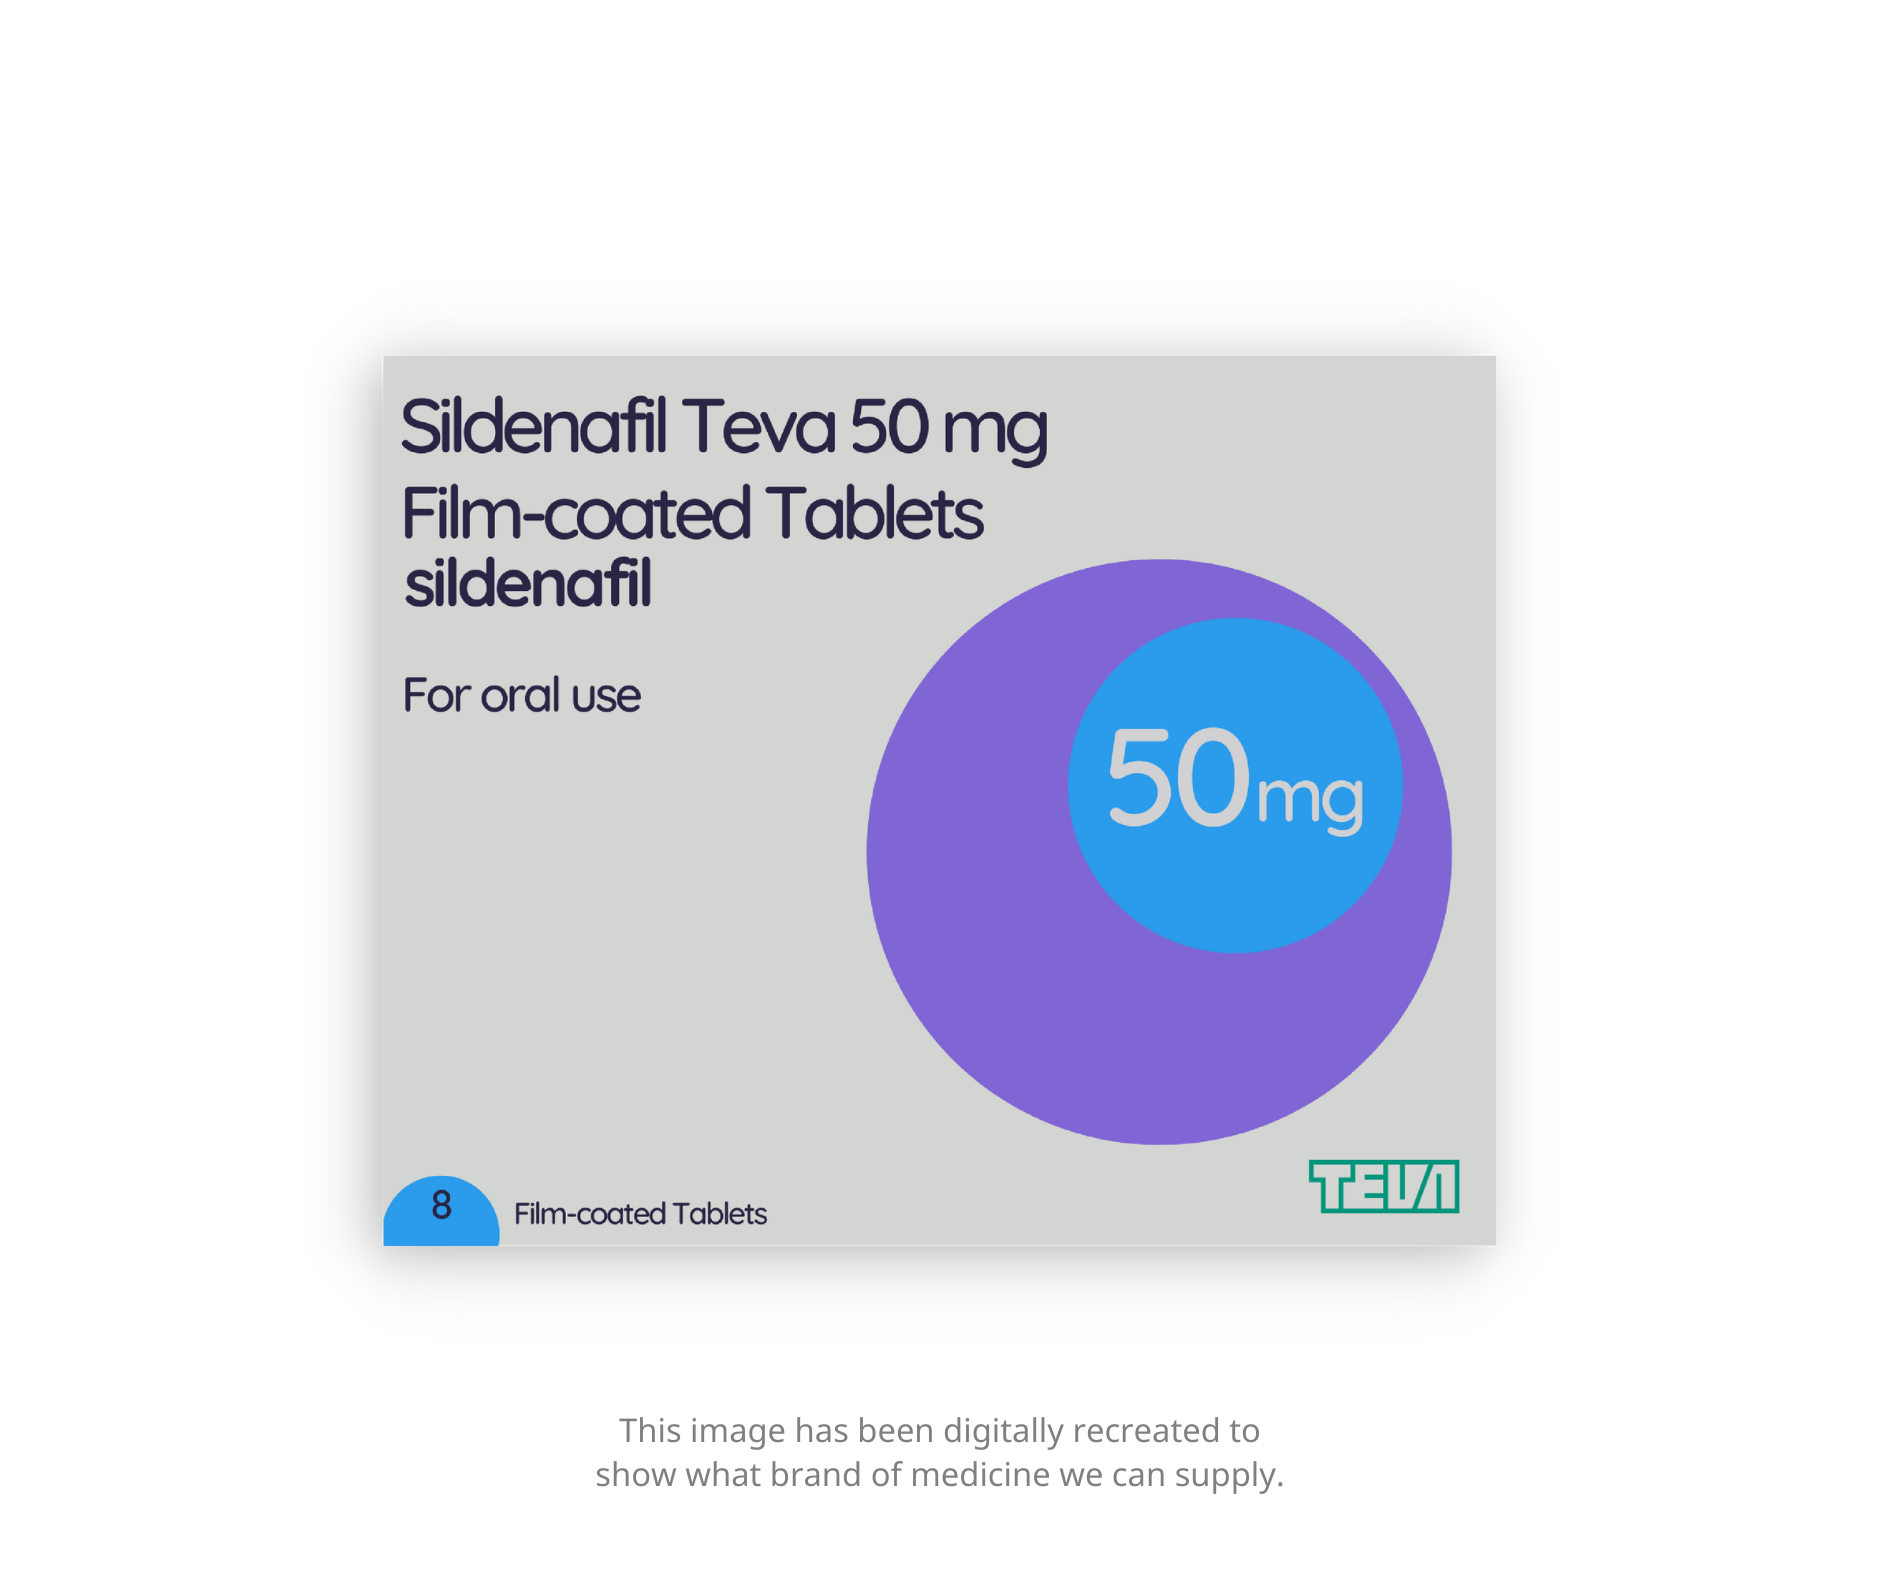 Sildenafil Teva - 50mg tablets